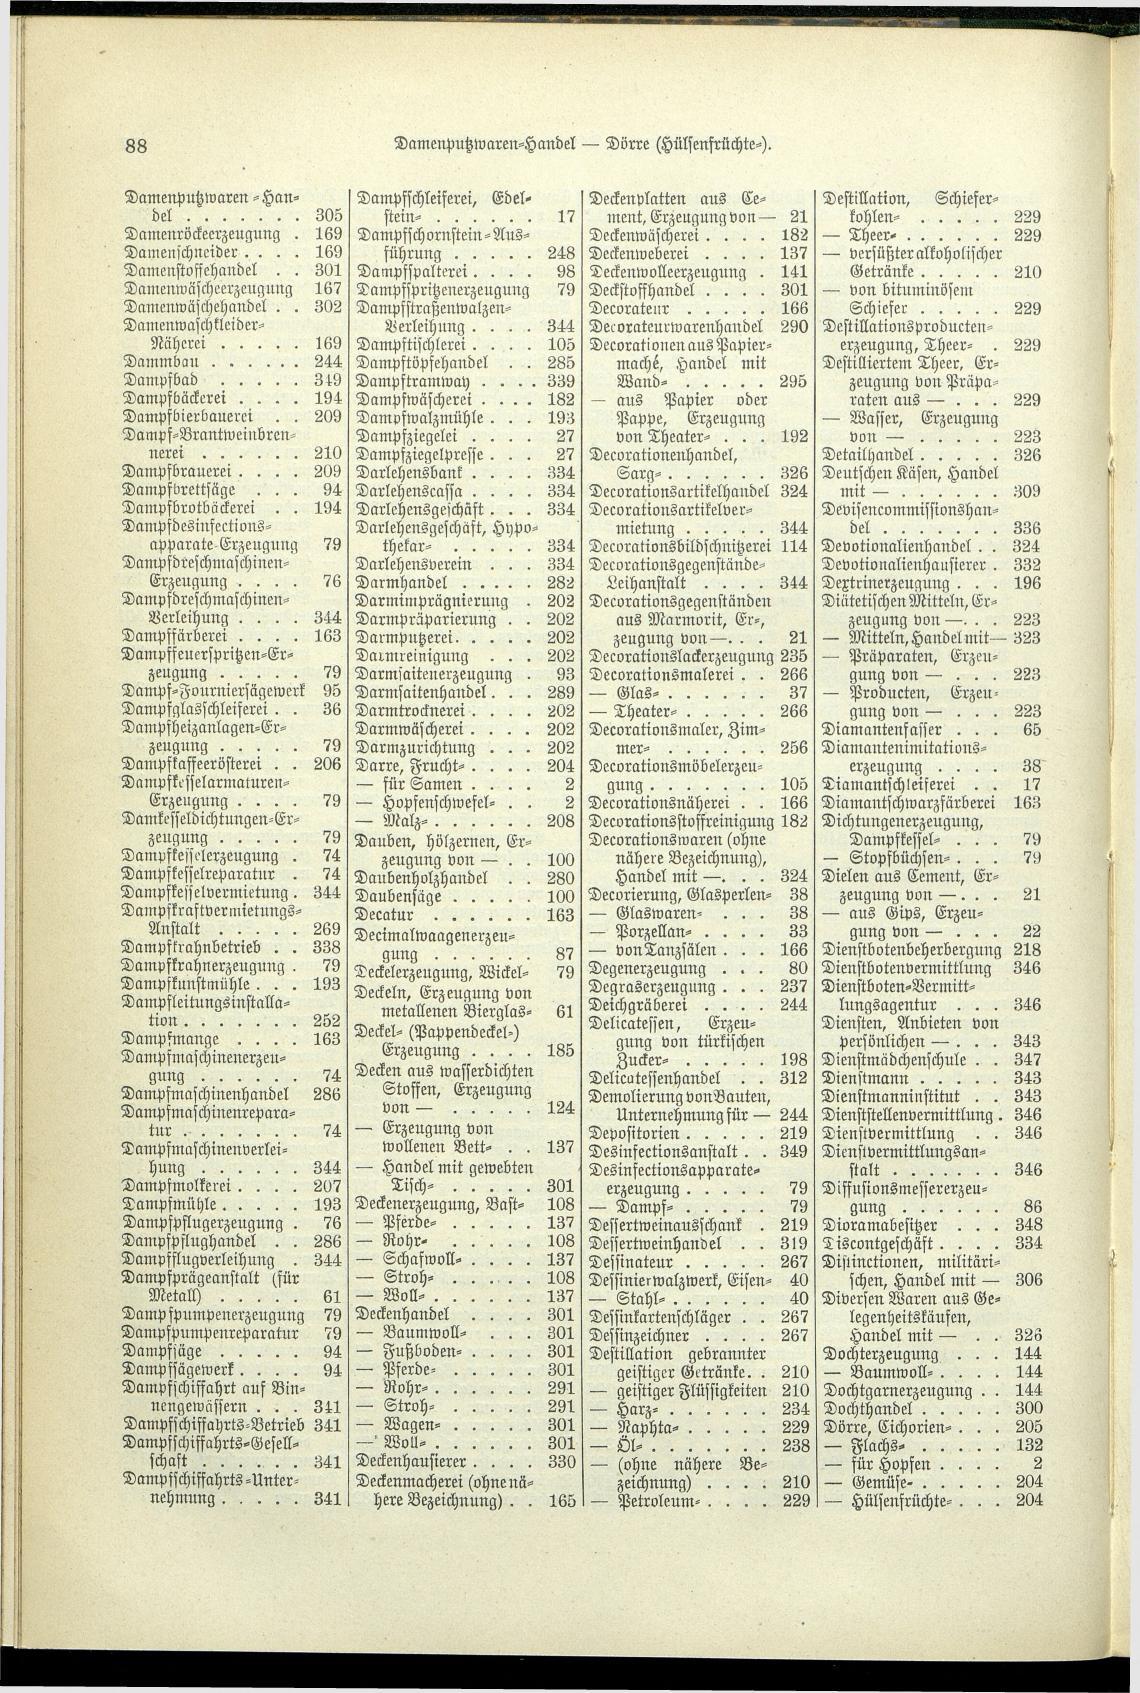 Verzeichnis der Gewerbe der im Reichsrathe vertretenen Königreiche und Länder 1900 - Seite 92